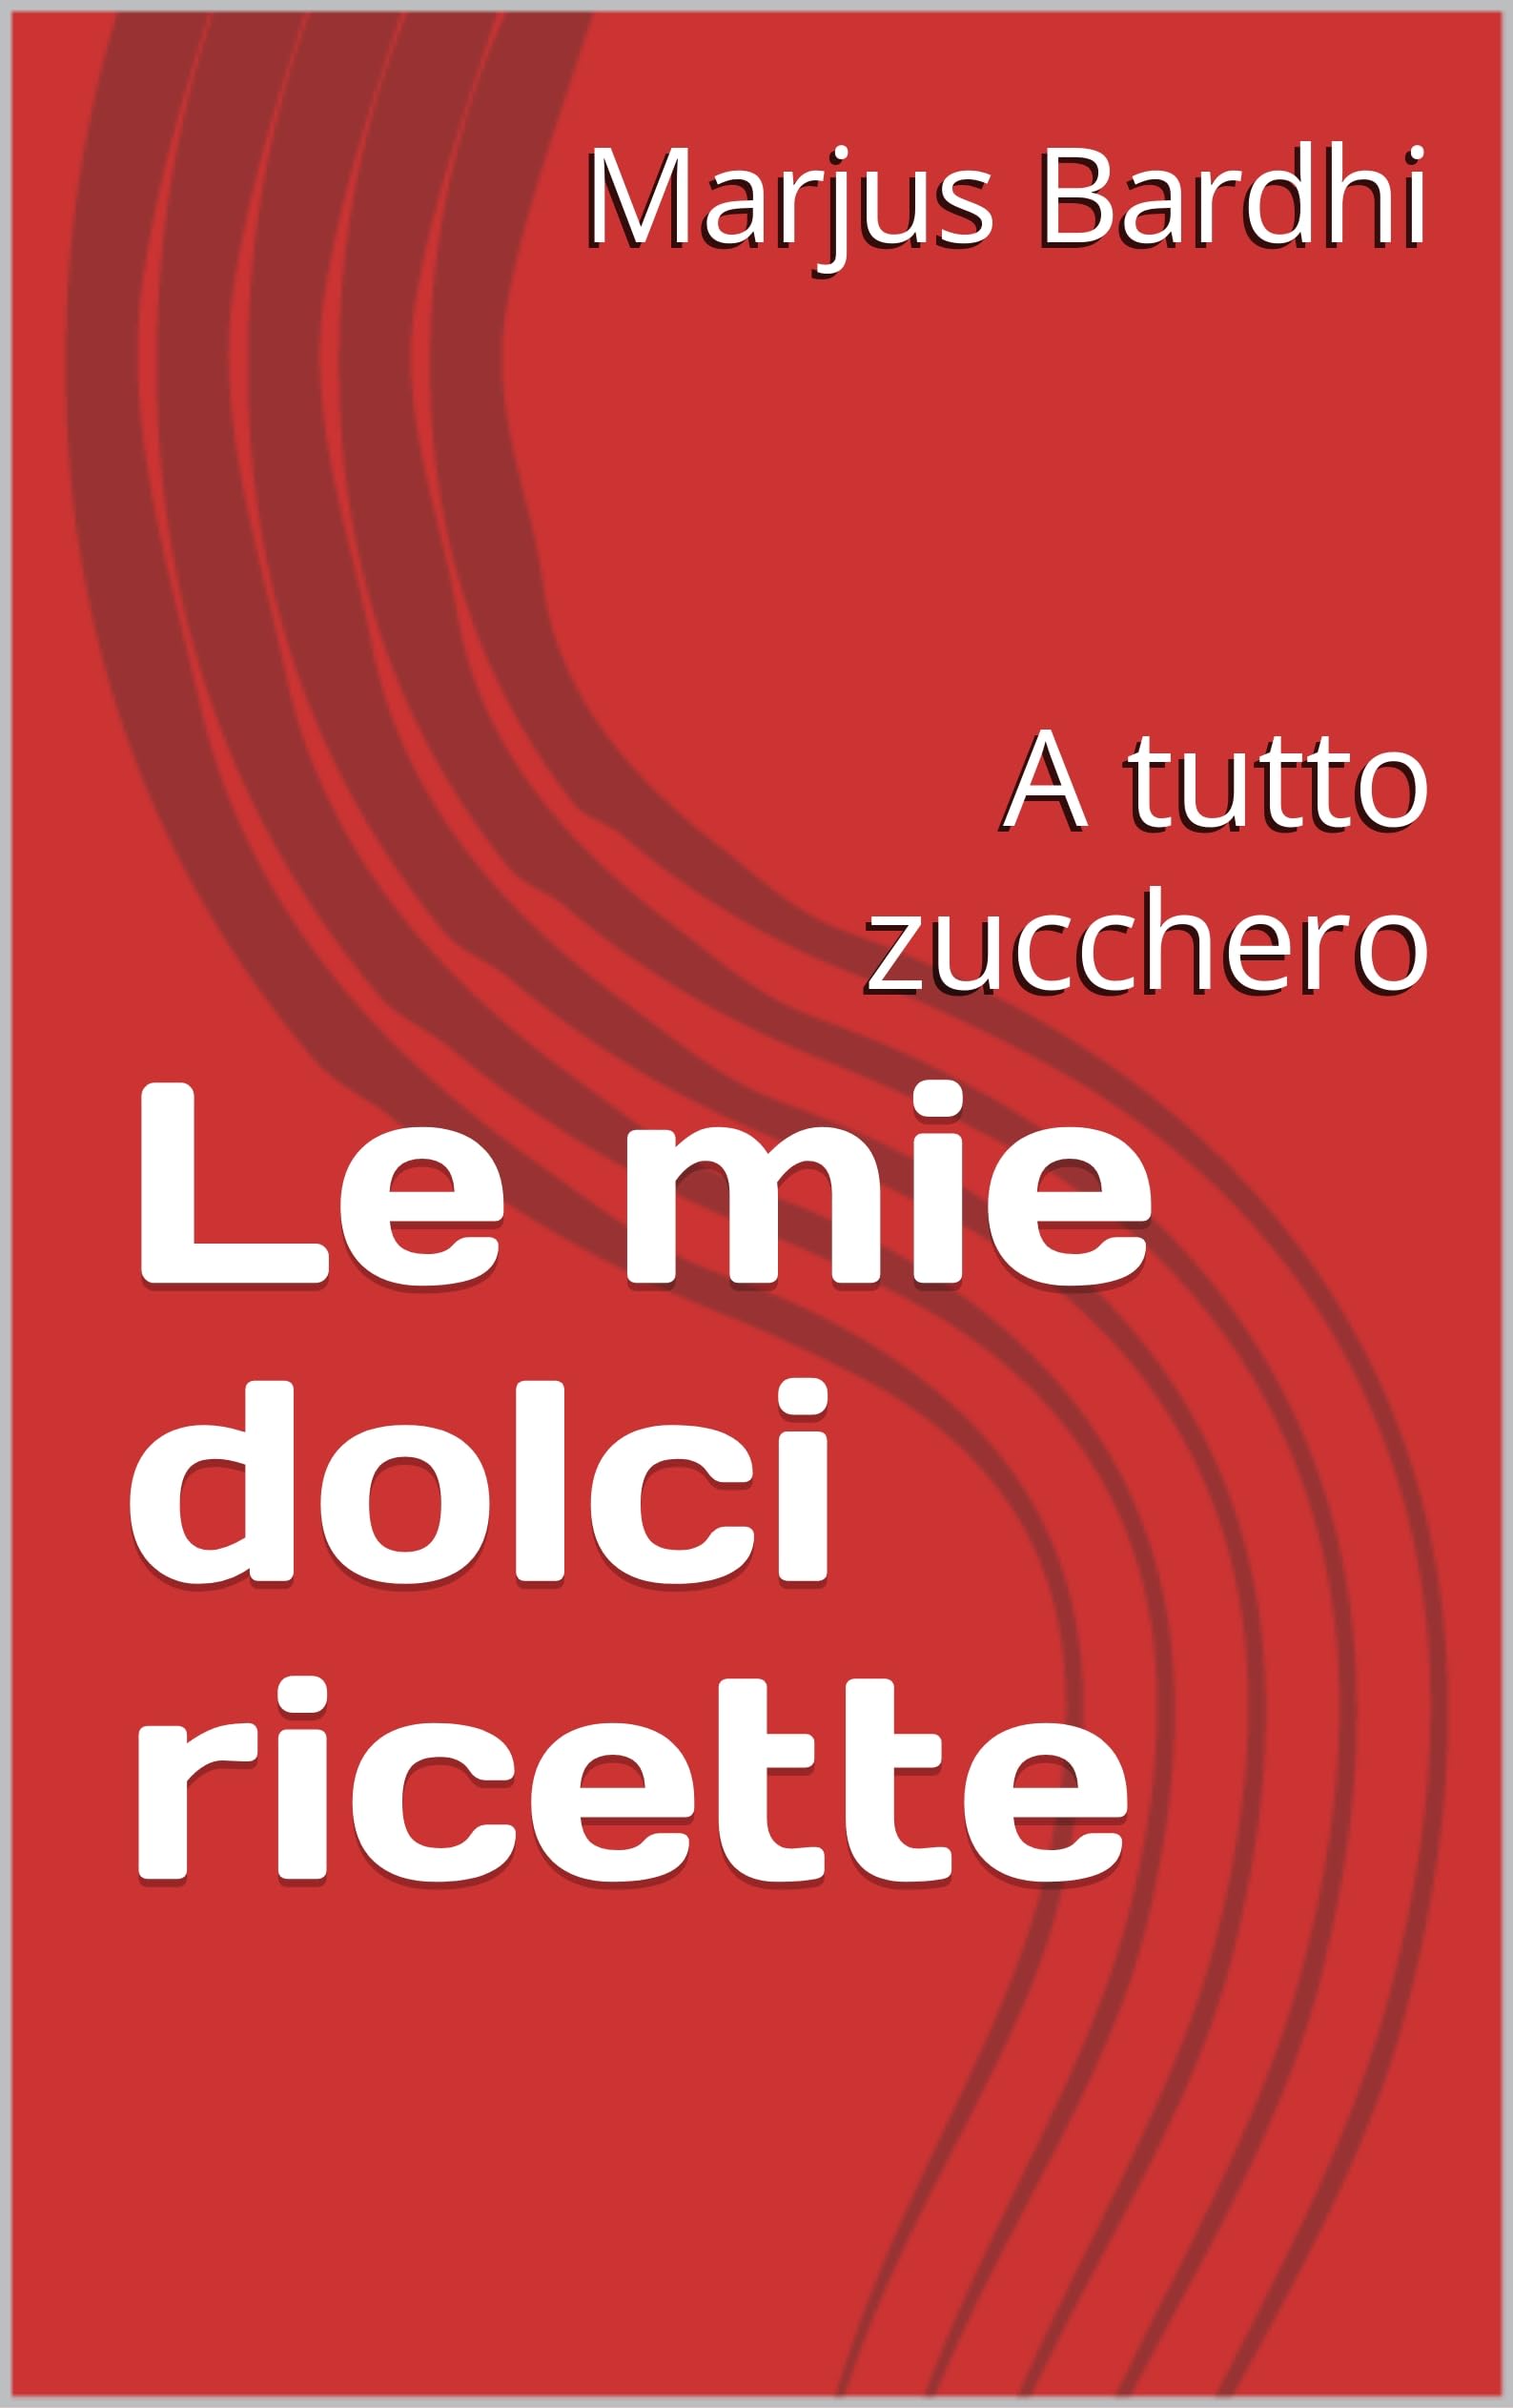 Le mie dolci ricette : A tutto zucchero (Italian Edition)